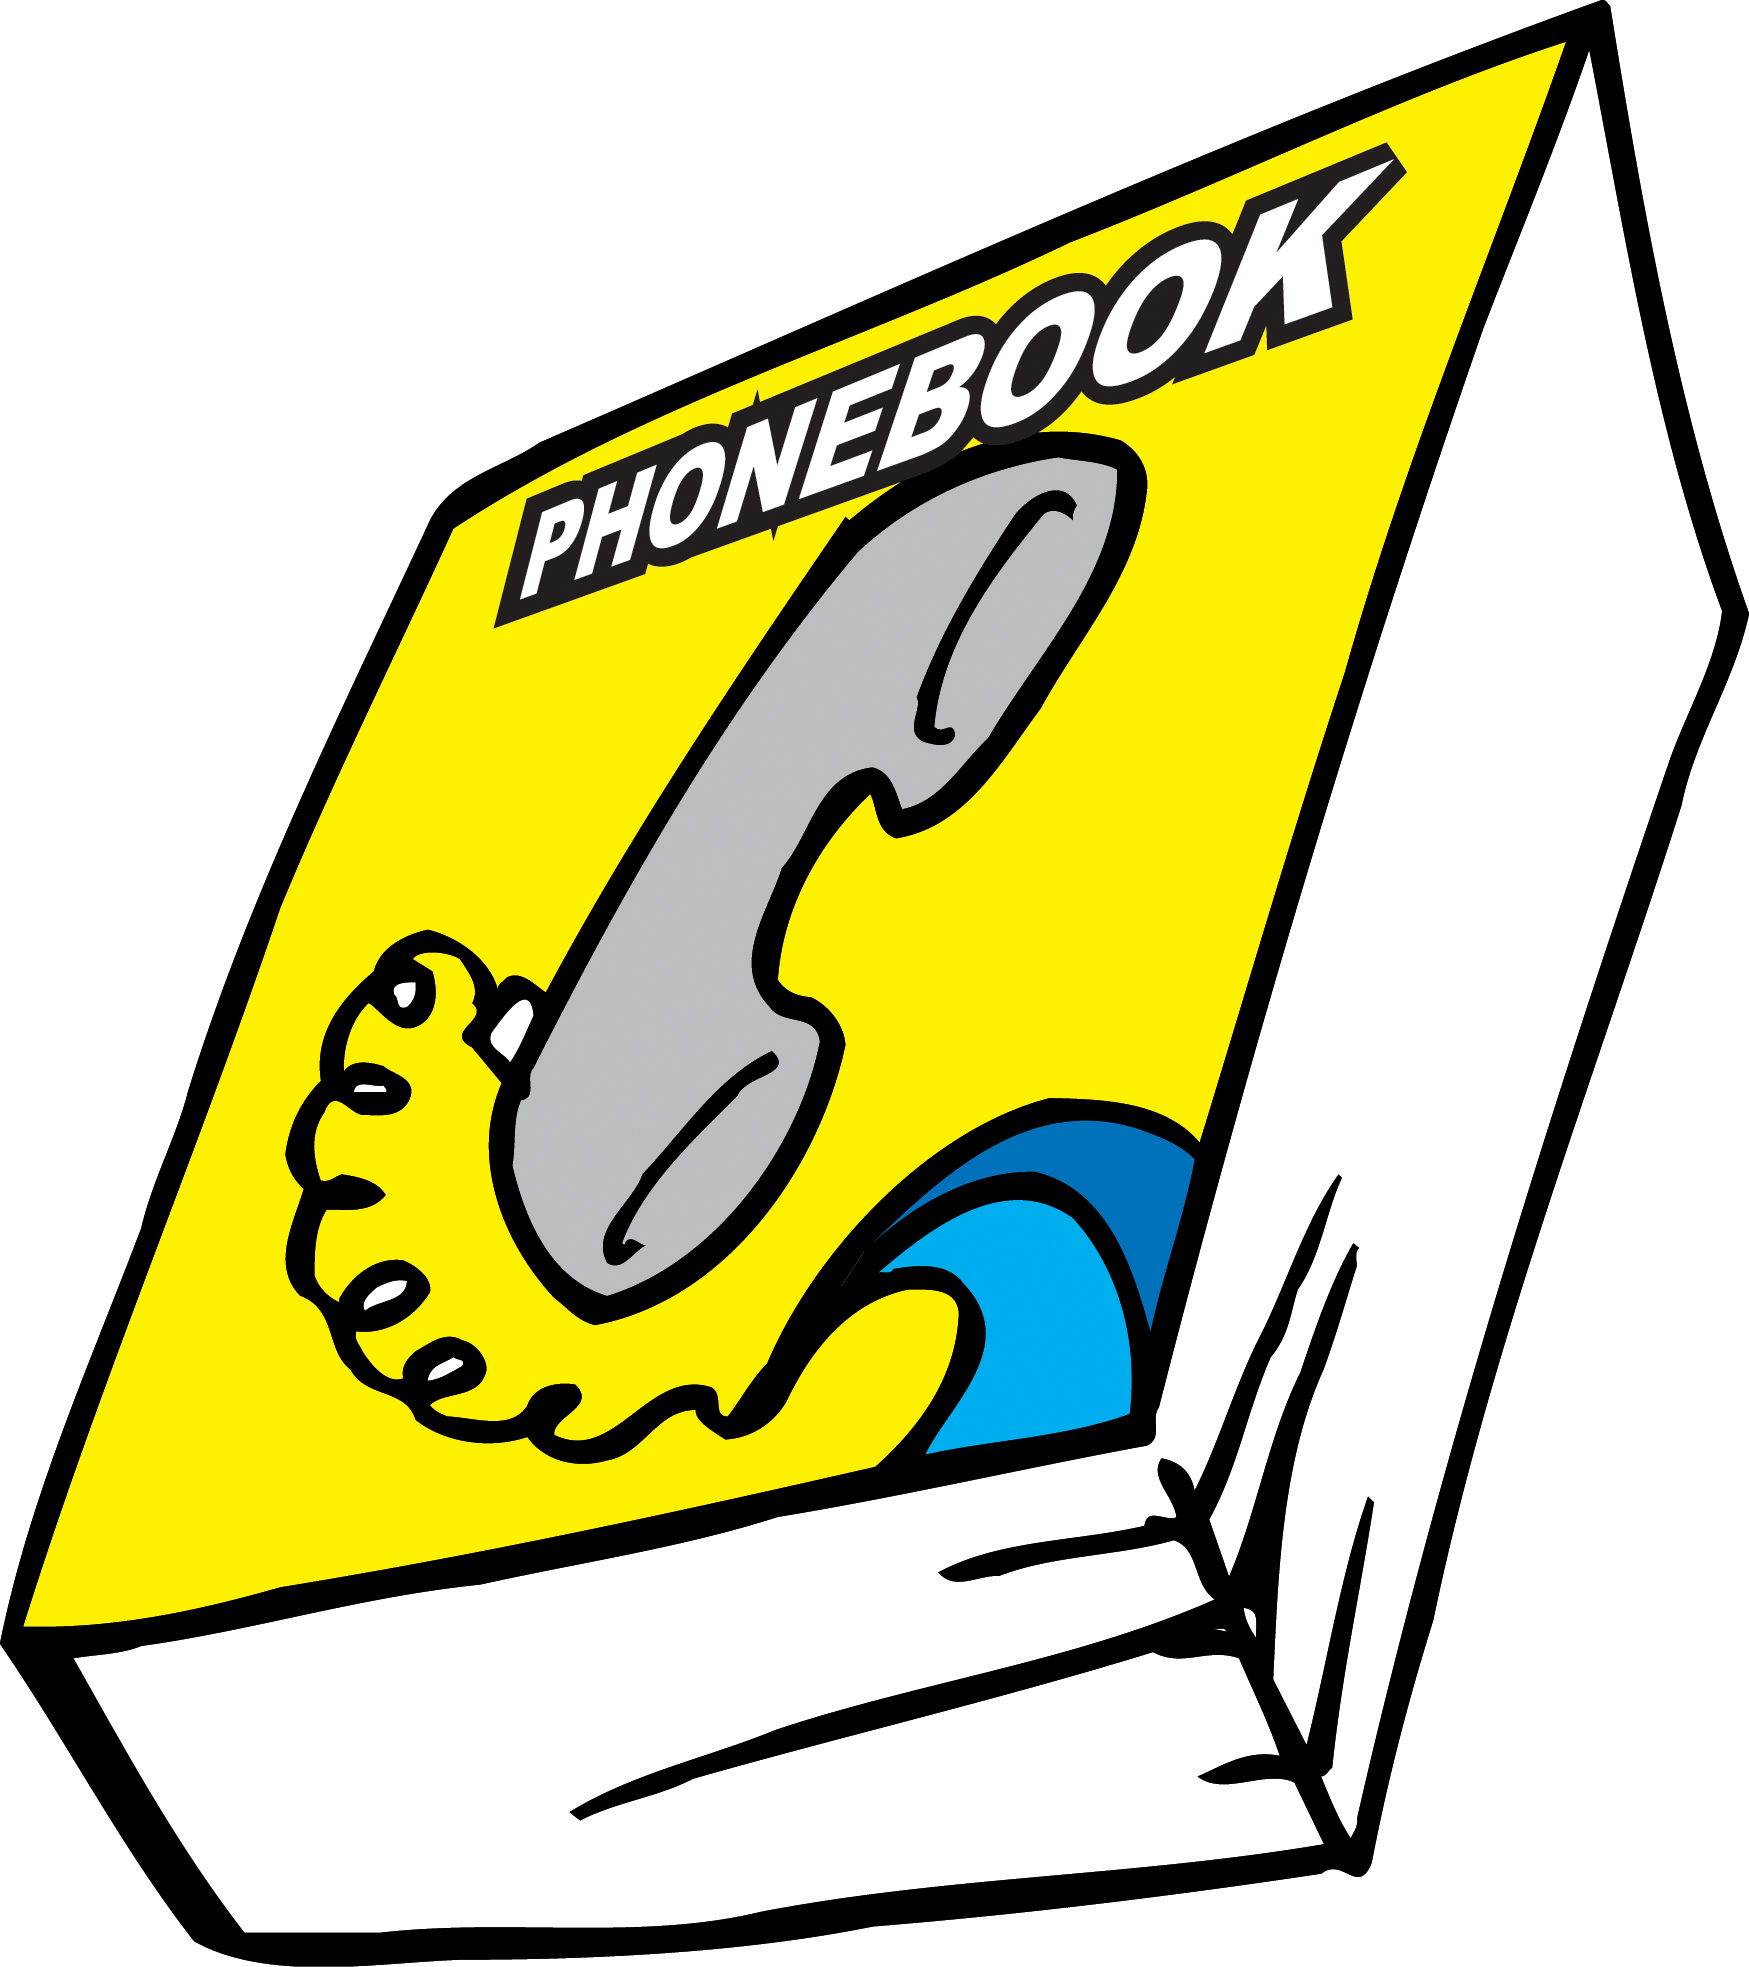 Phone book clipart - ClipartFox